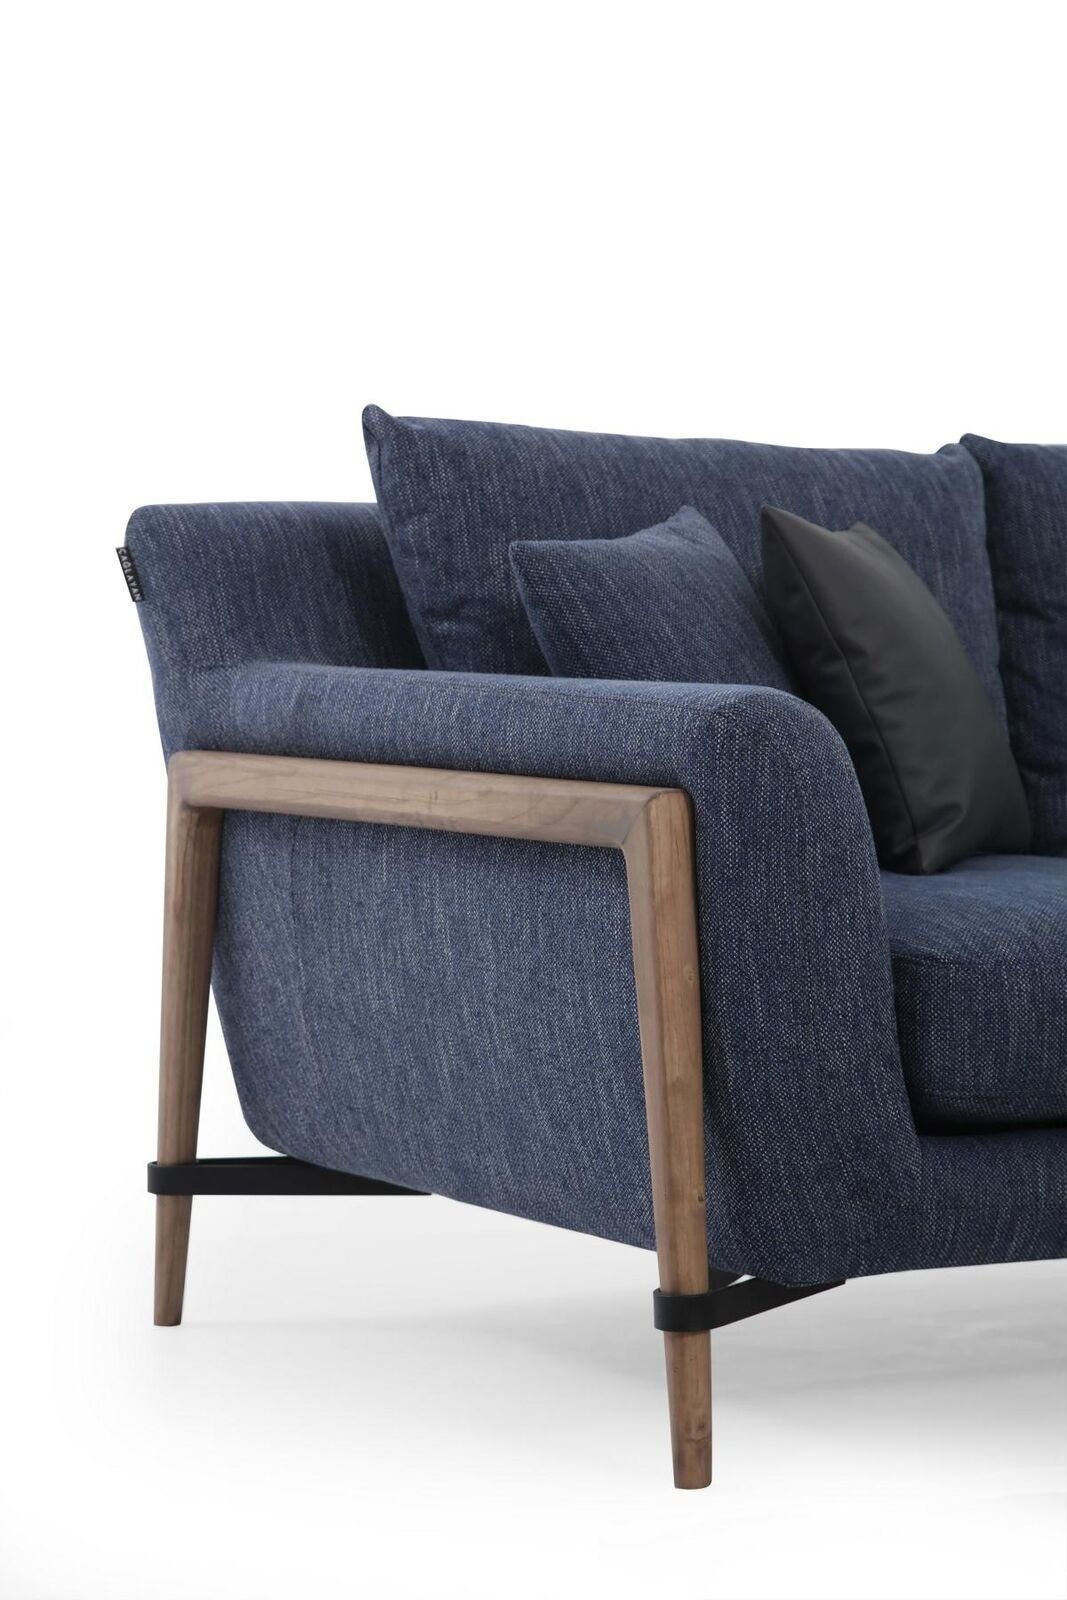 Stoff 4 Made JVmoebel Blau, Sofa in Sitzer Viersitzer Modern Design Europa Teile, 1 Wohnzimmer Sofas 4-Sitzer